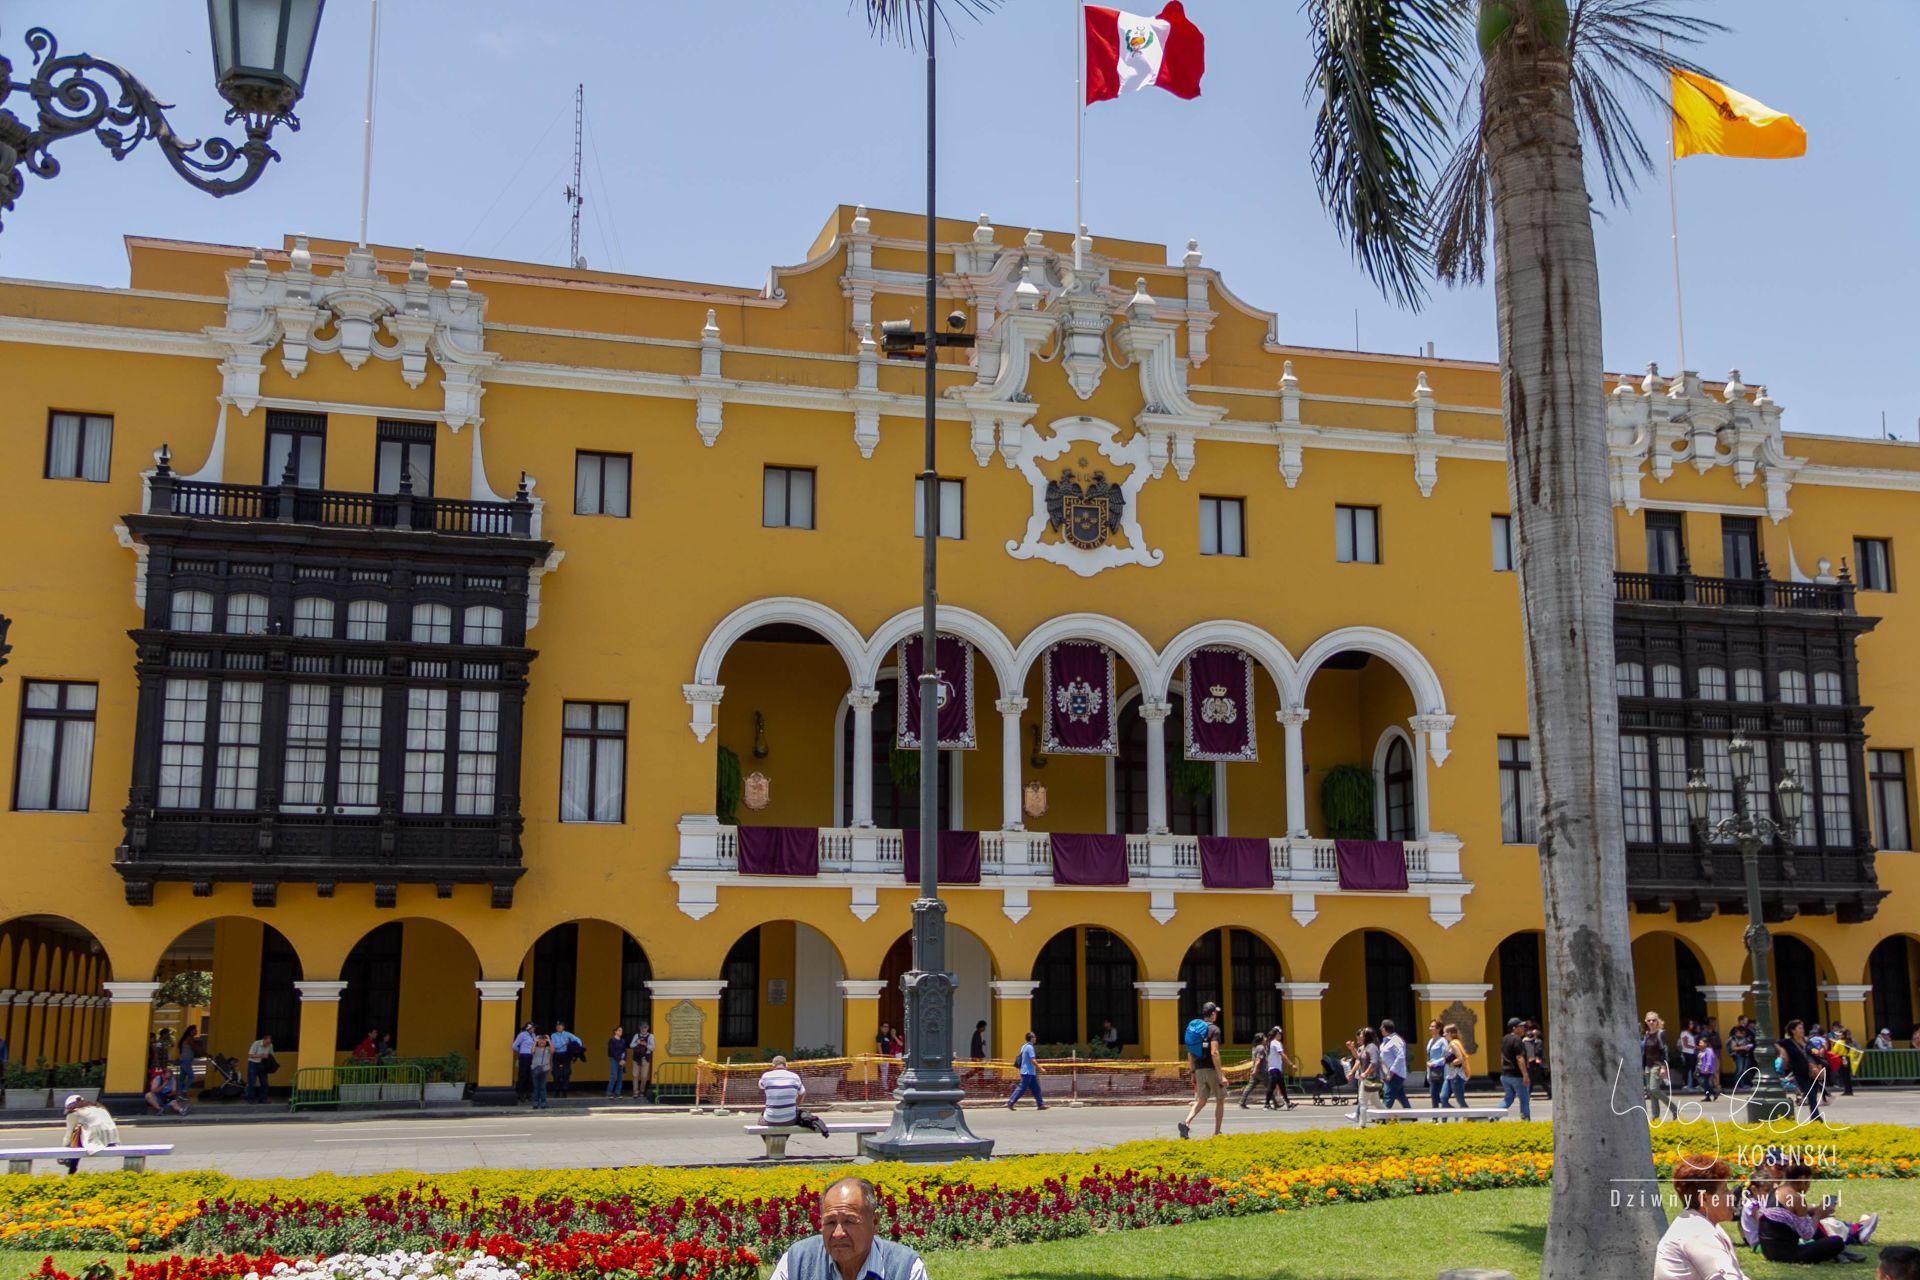 Urząd miejski w Limie